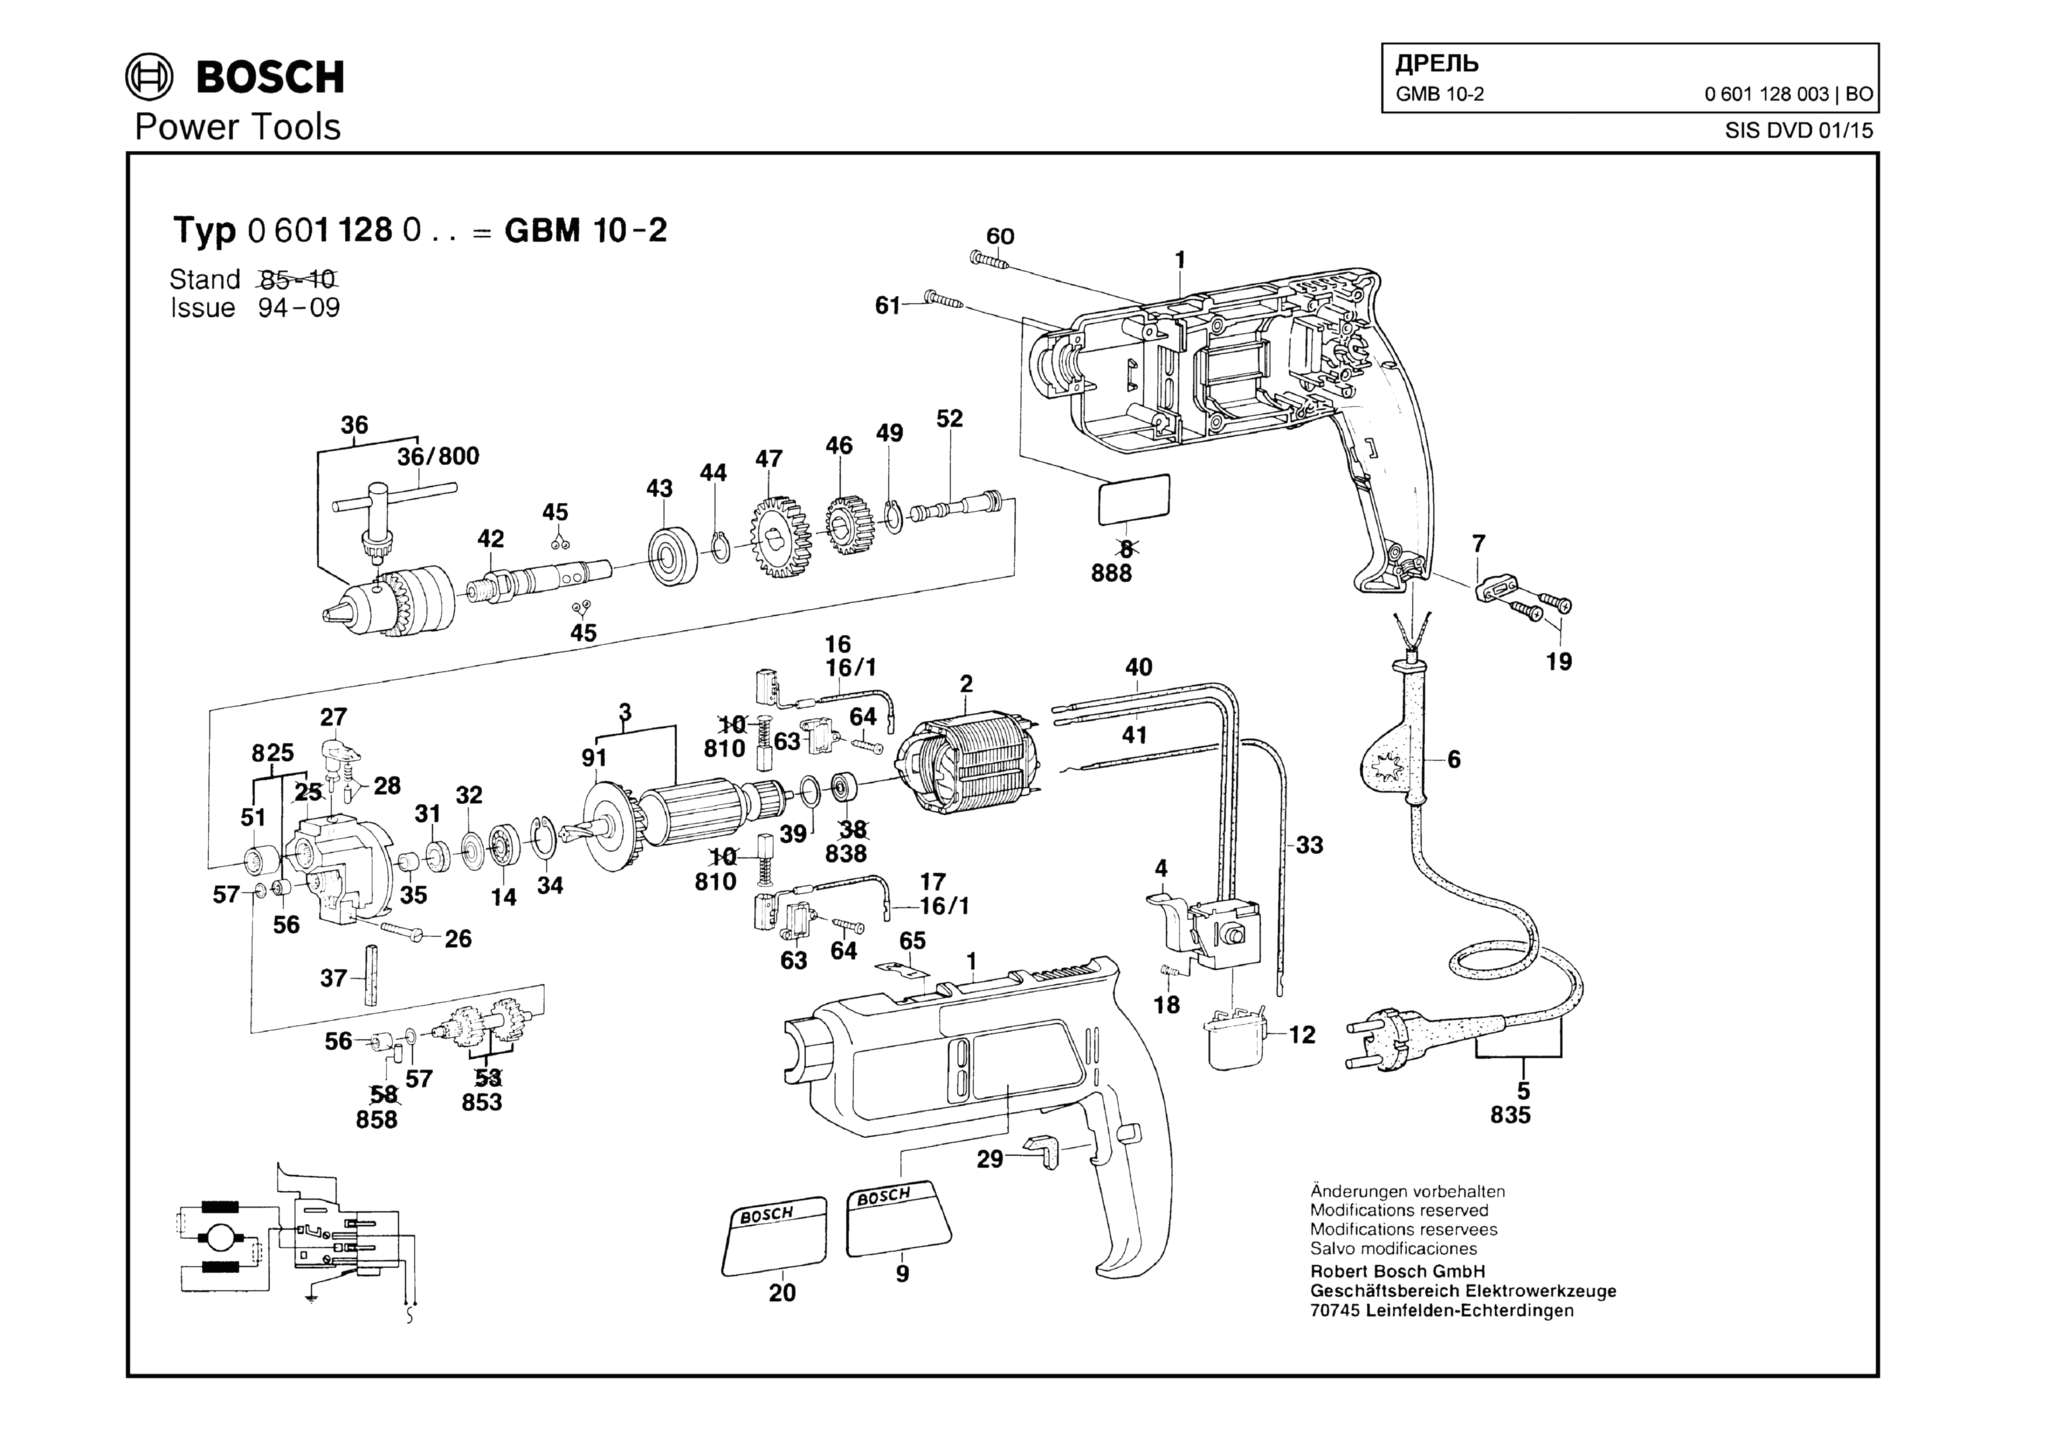 Запчасти, схема и деталировка Bosch GMB 10-2 (ТИП 0601128003)